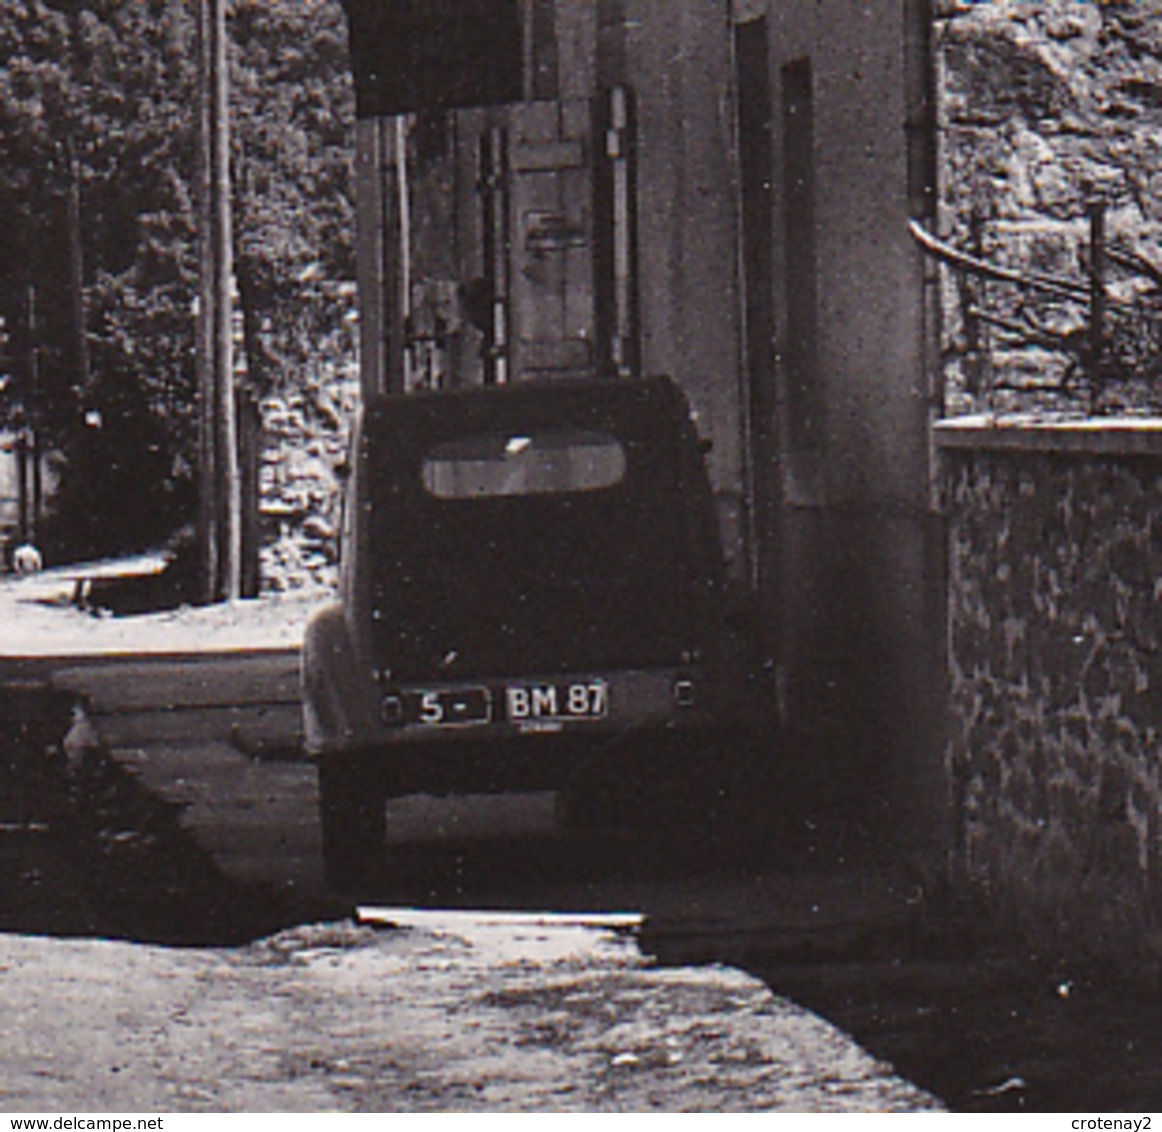 87 SAINT CYR Vers Rochechouart Route De ST JUNIEN VOIR 3 ZOOMS Citroën 2CV Peugeot 203 PUB Kina LILET BYRRH Café Tabac - Rochechouart